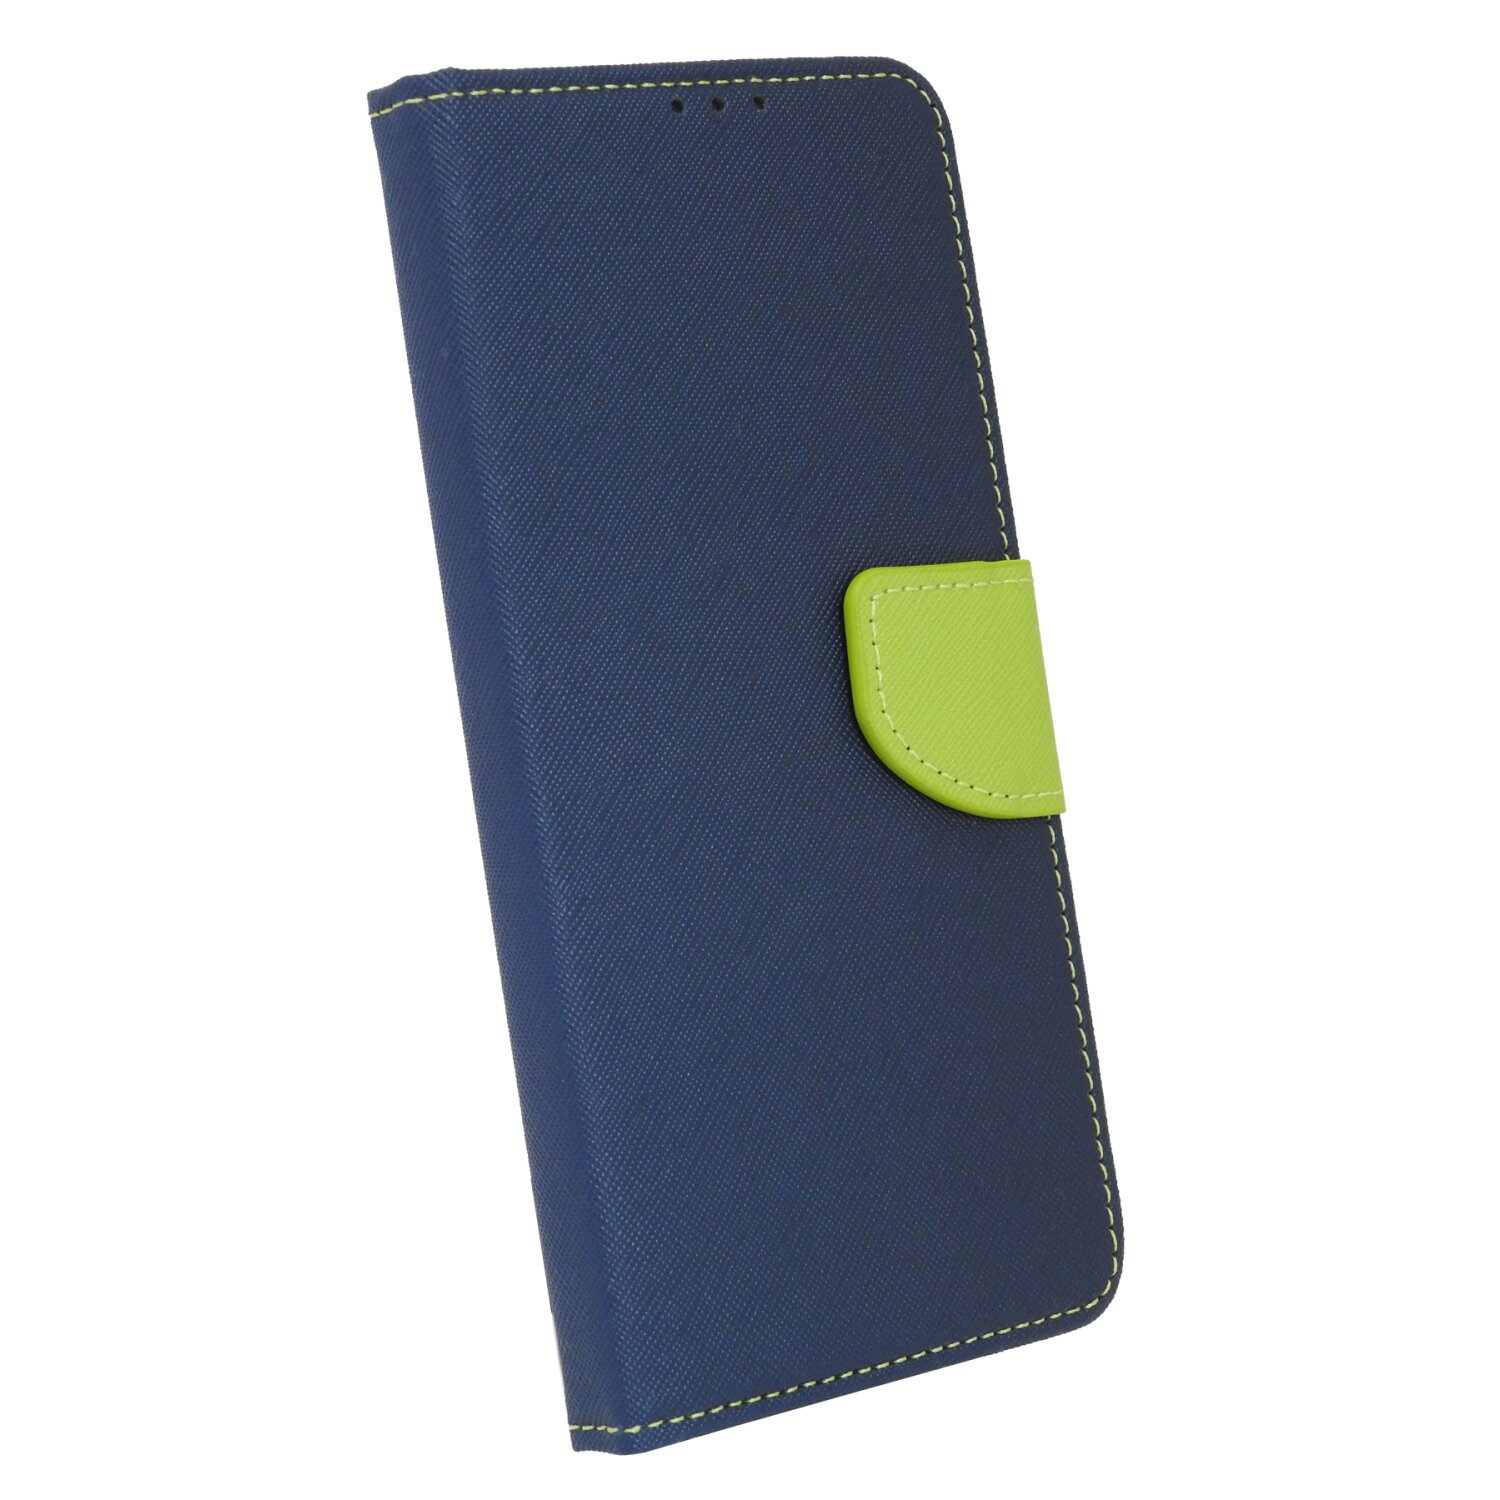 COFI Buch Tasche, Bookcover, Blau-Grün A04s, Galaxy Samsung